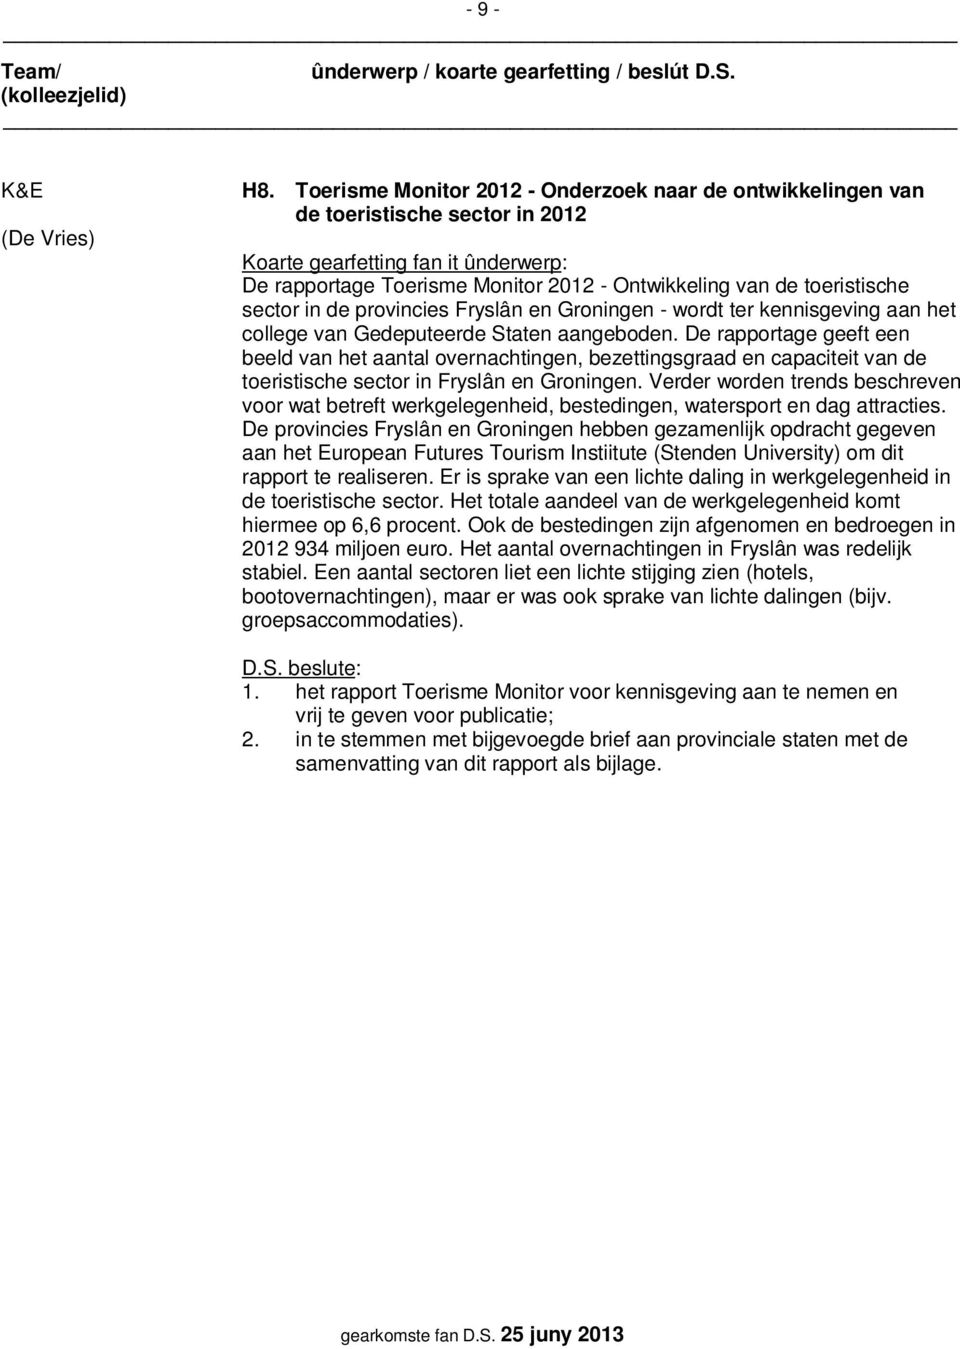 Groningen - wordt ter kennisgeving aan het college van Gedeputeerde Staten aangeboden.